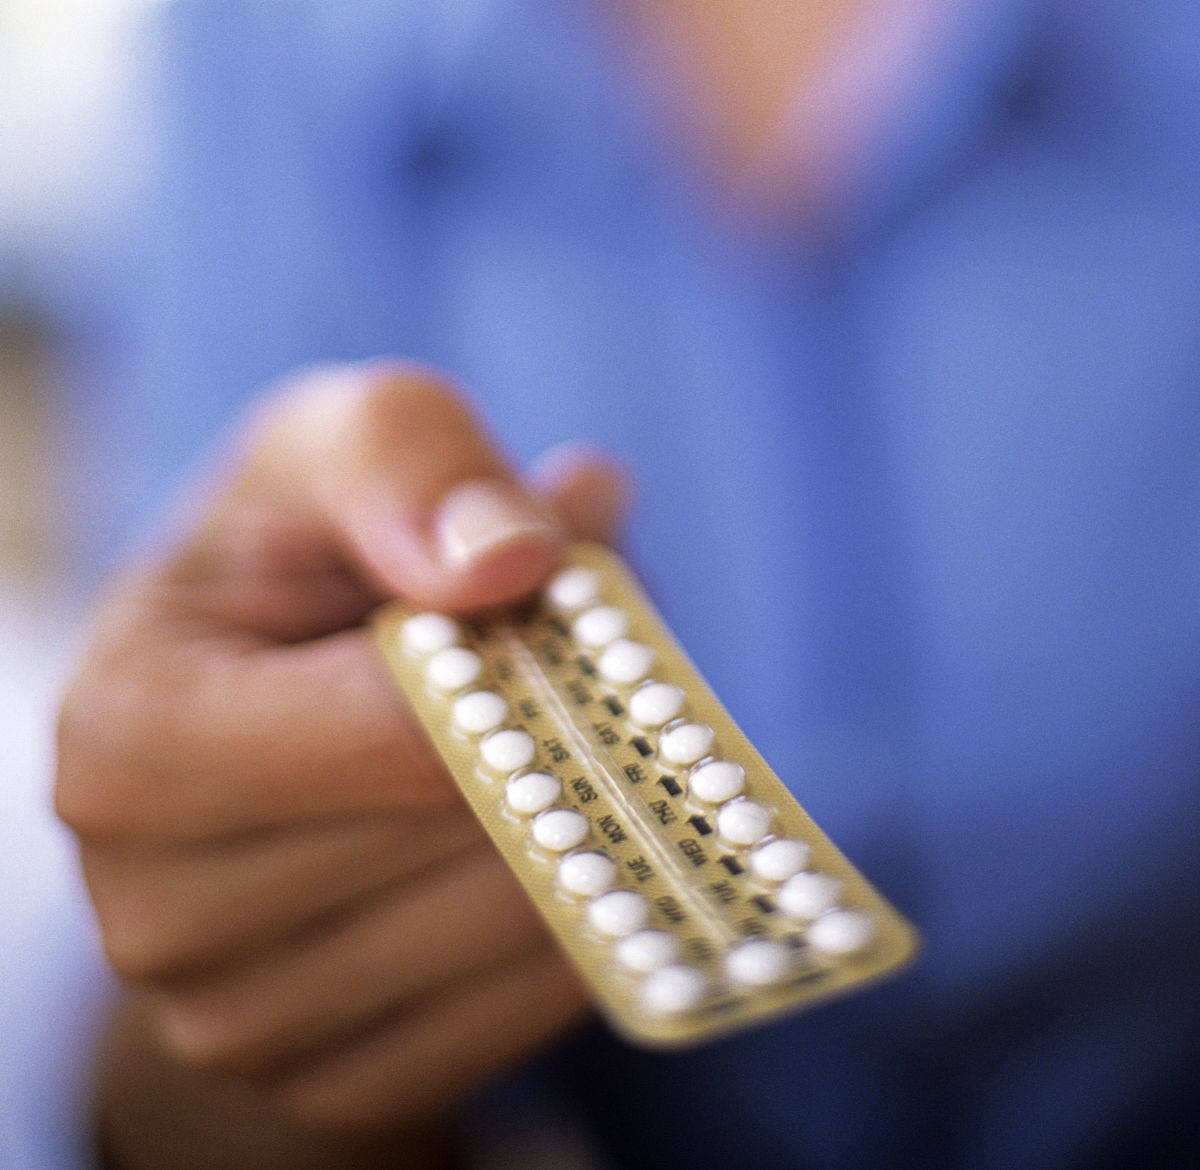 这种产后避孕方法对男女都有效,安全性也最高,可惜很少夫妻喜欢